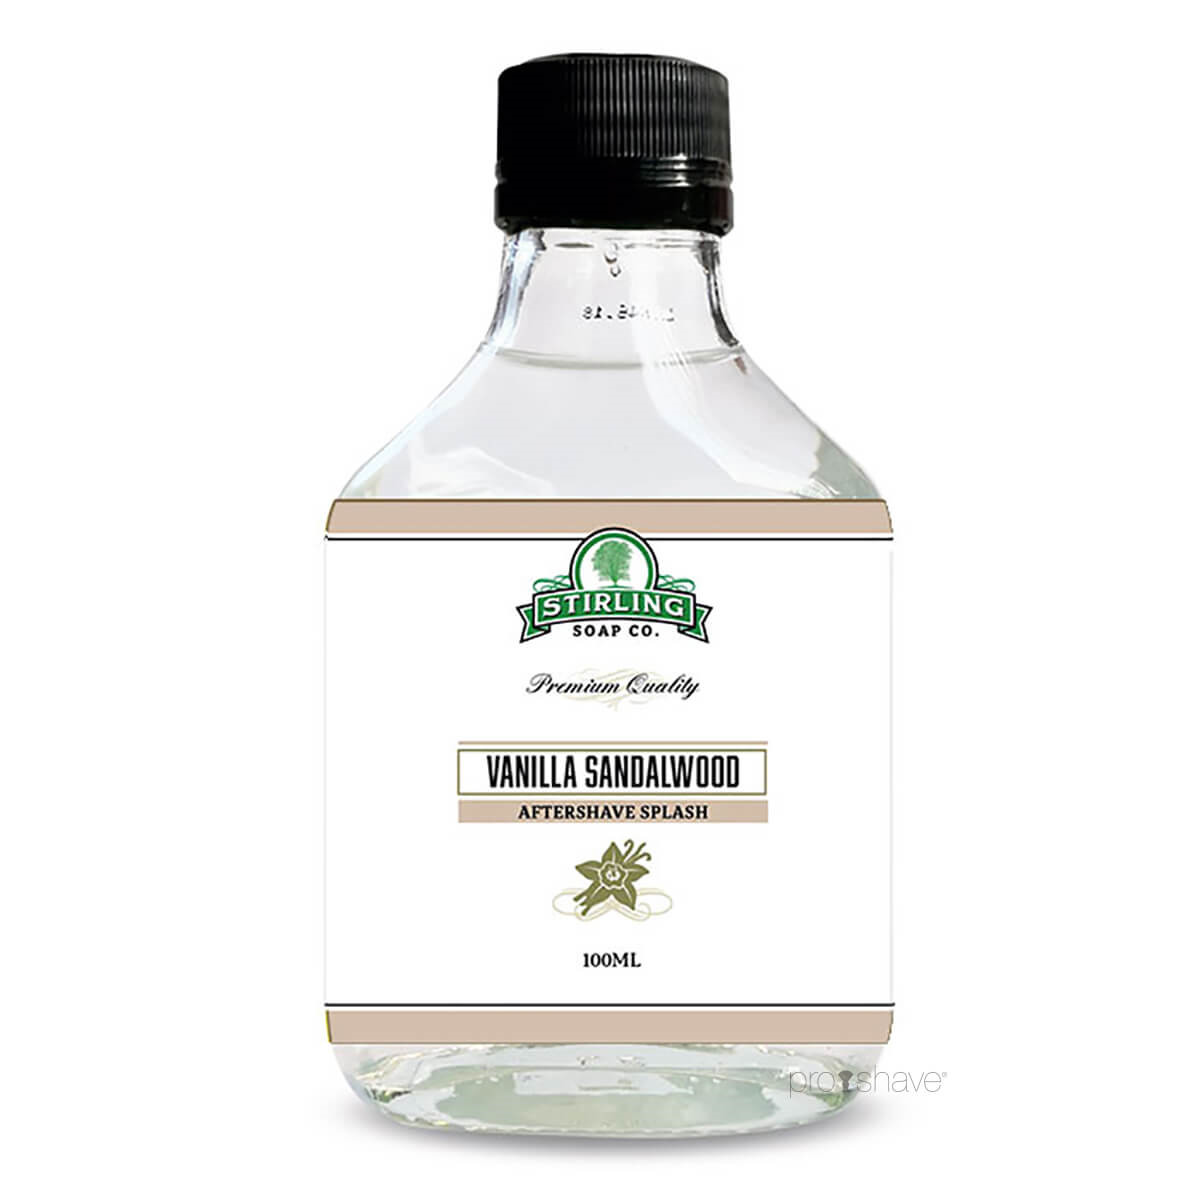 Stirling Soap Co. Aftershave Splash, Vanilla Sandalwood, 100 ml.